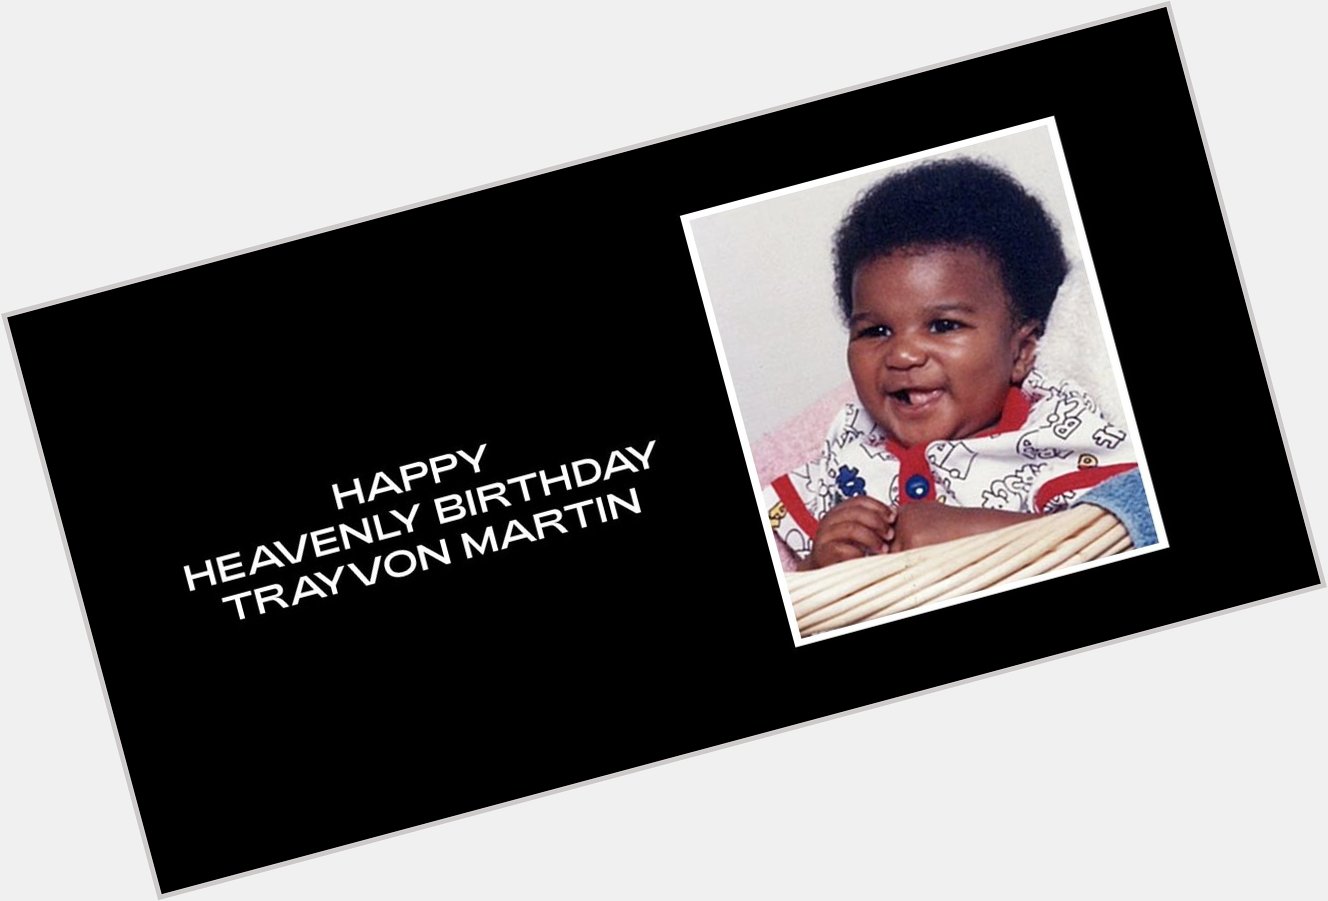 Happy Heavenly Birthday, Trayvon Martin. 